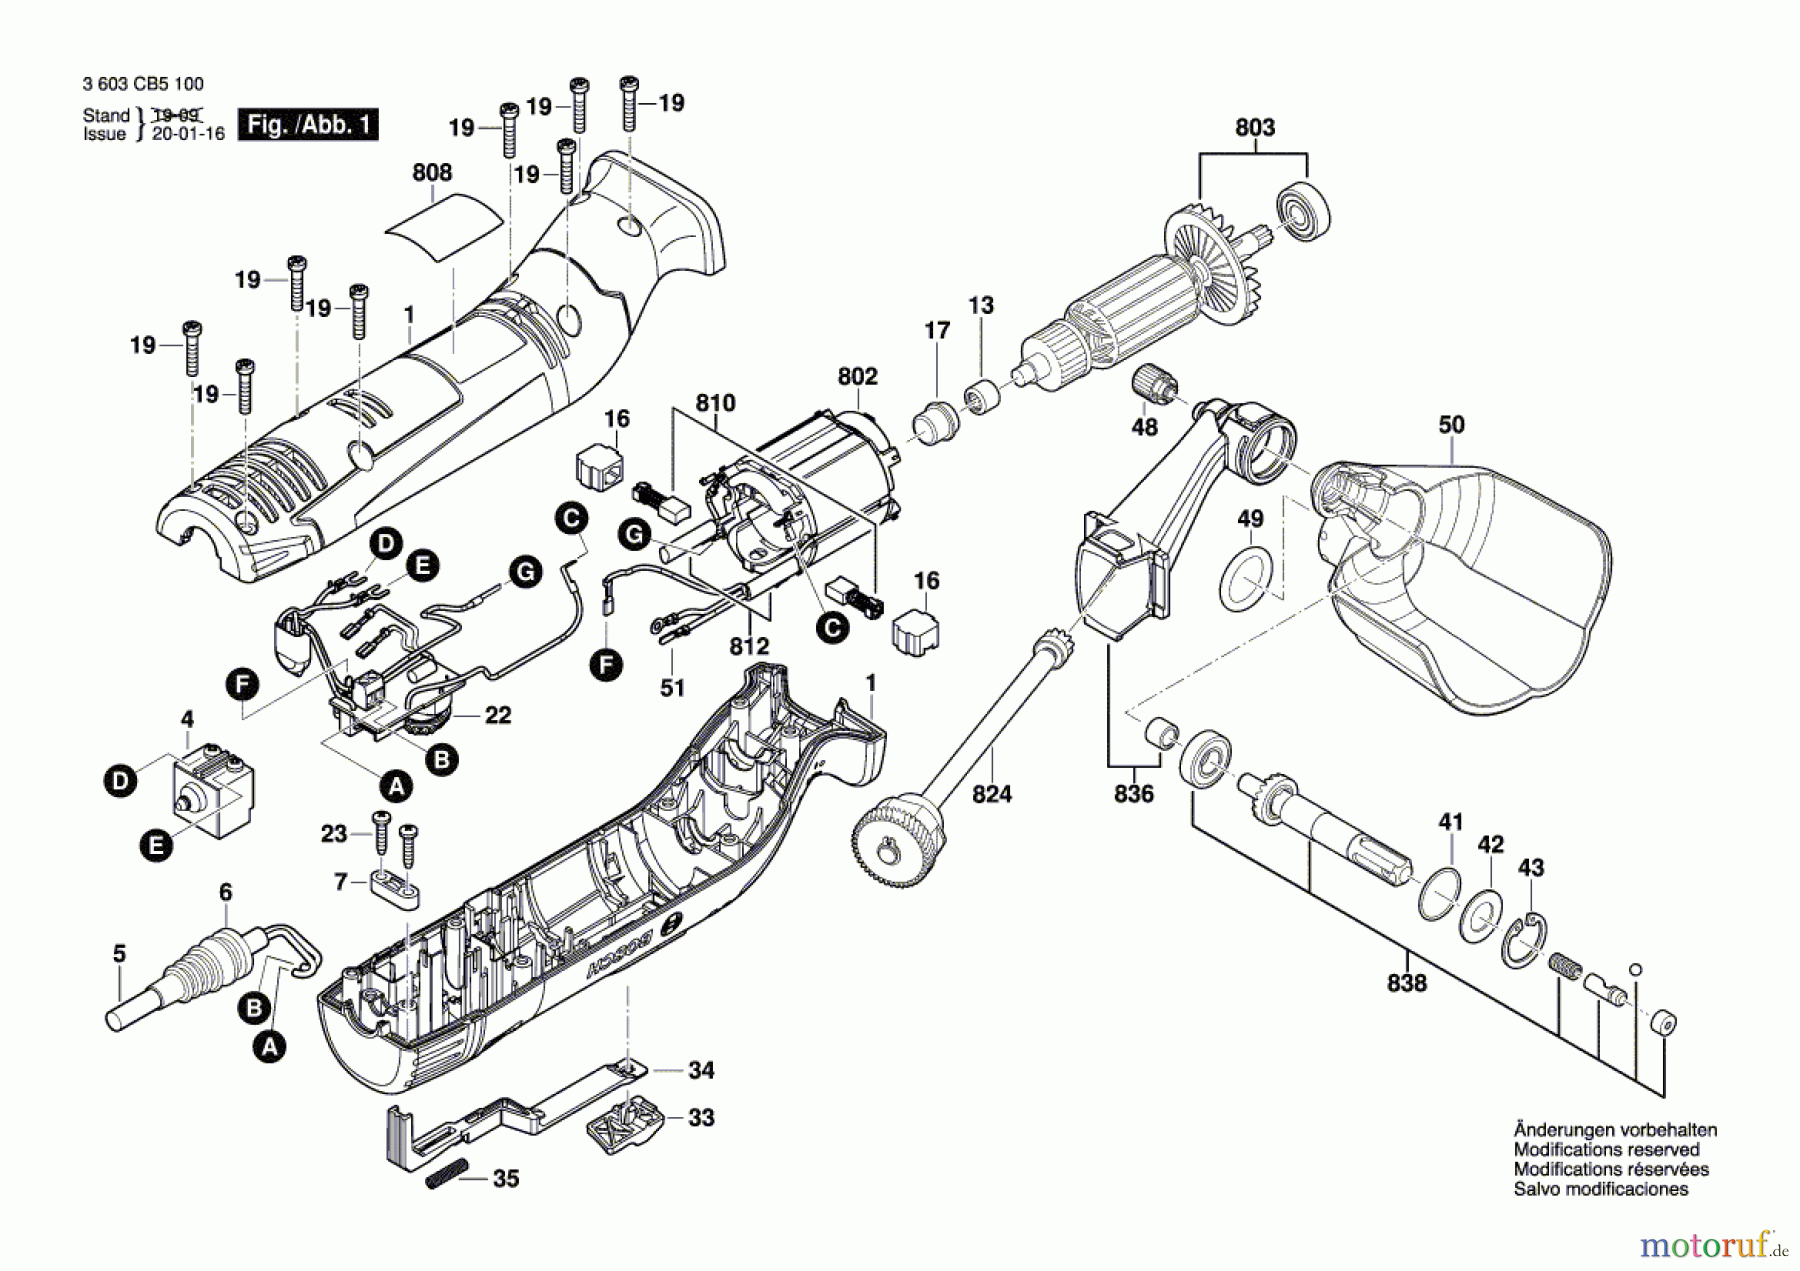  Bosch Werkzeug Schleifrolle Texoro Seite 1